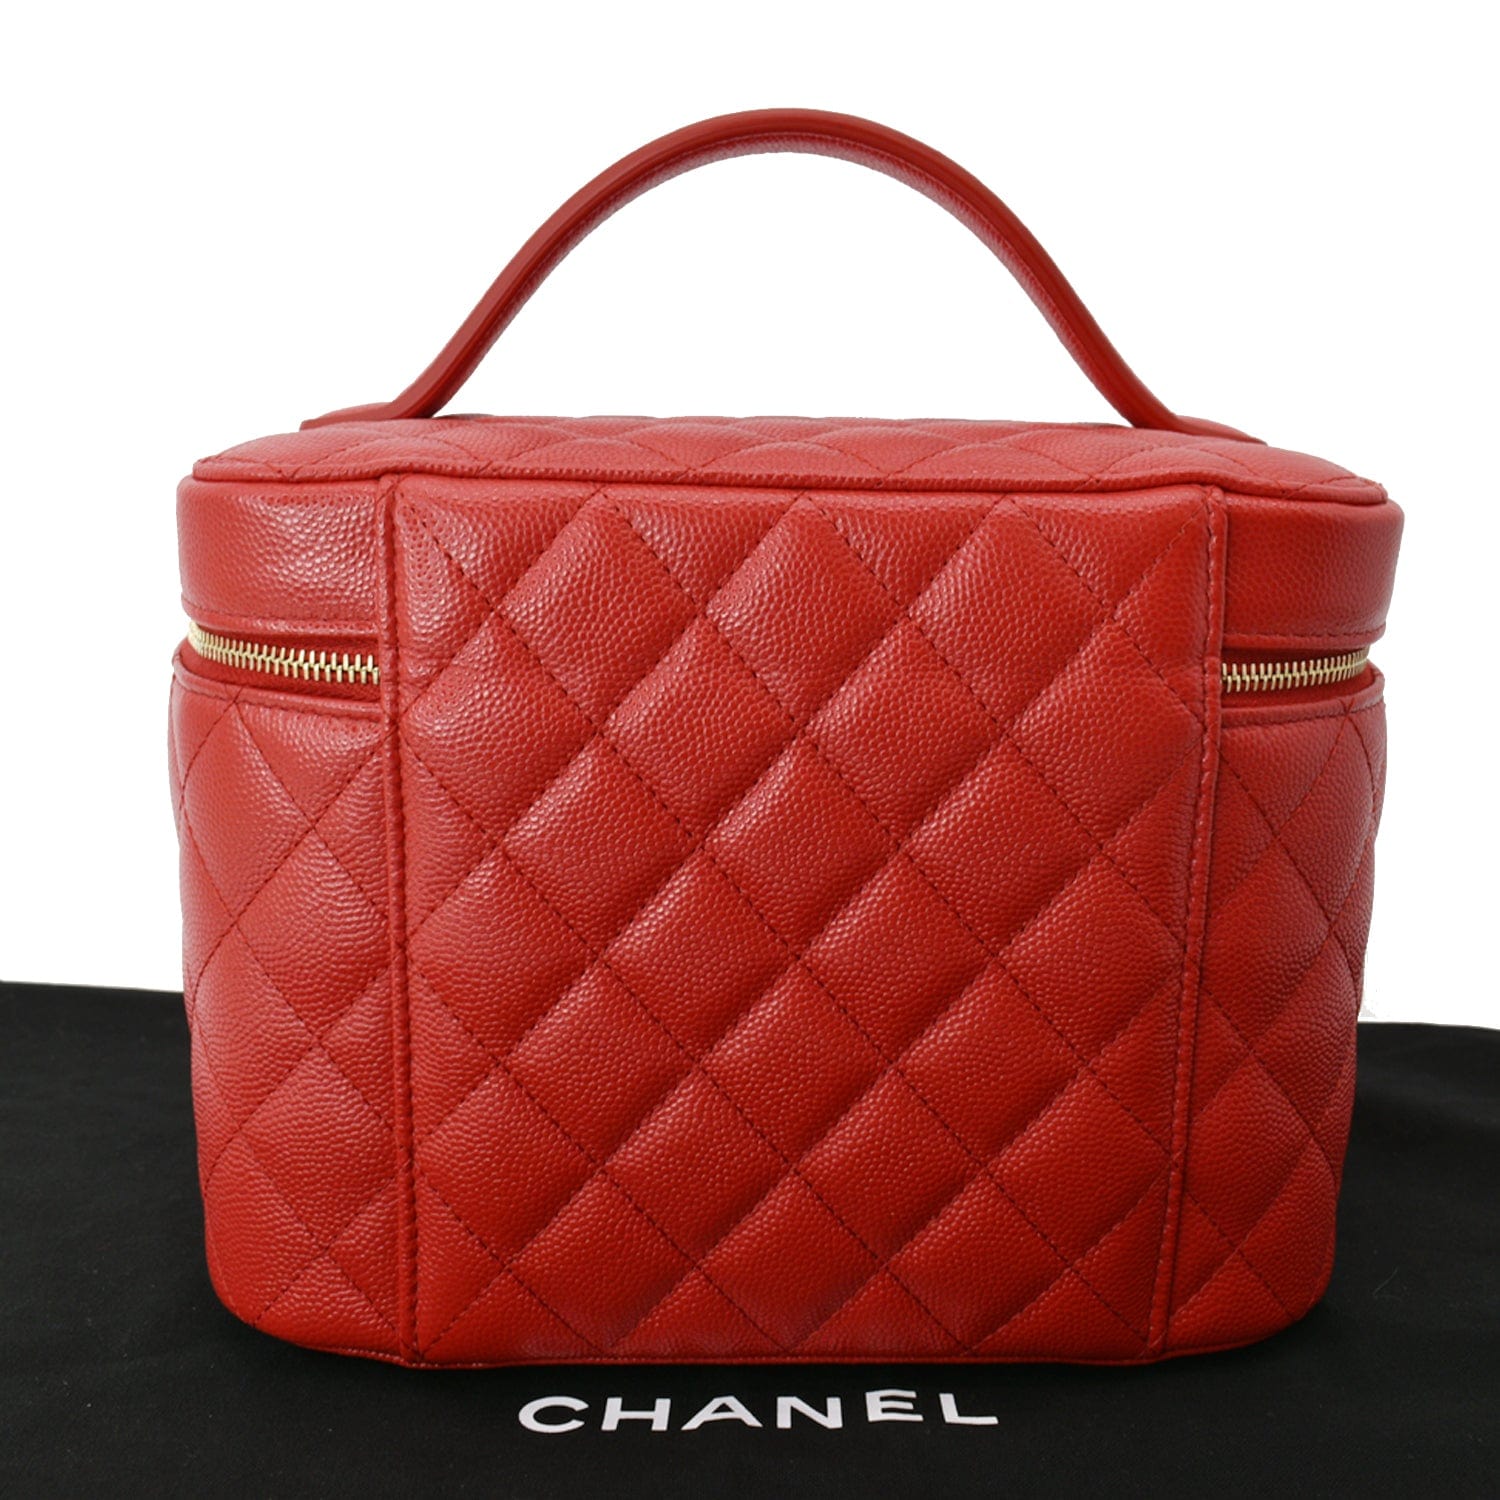 CHANEL Caviar Box Top Handle Vanity Case - The Purse Ladies